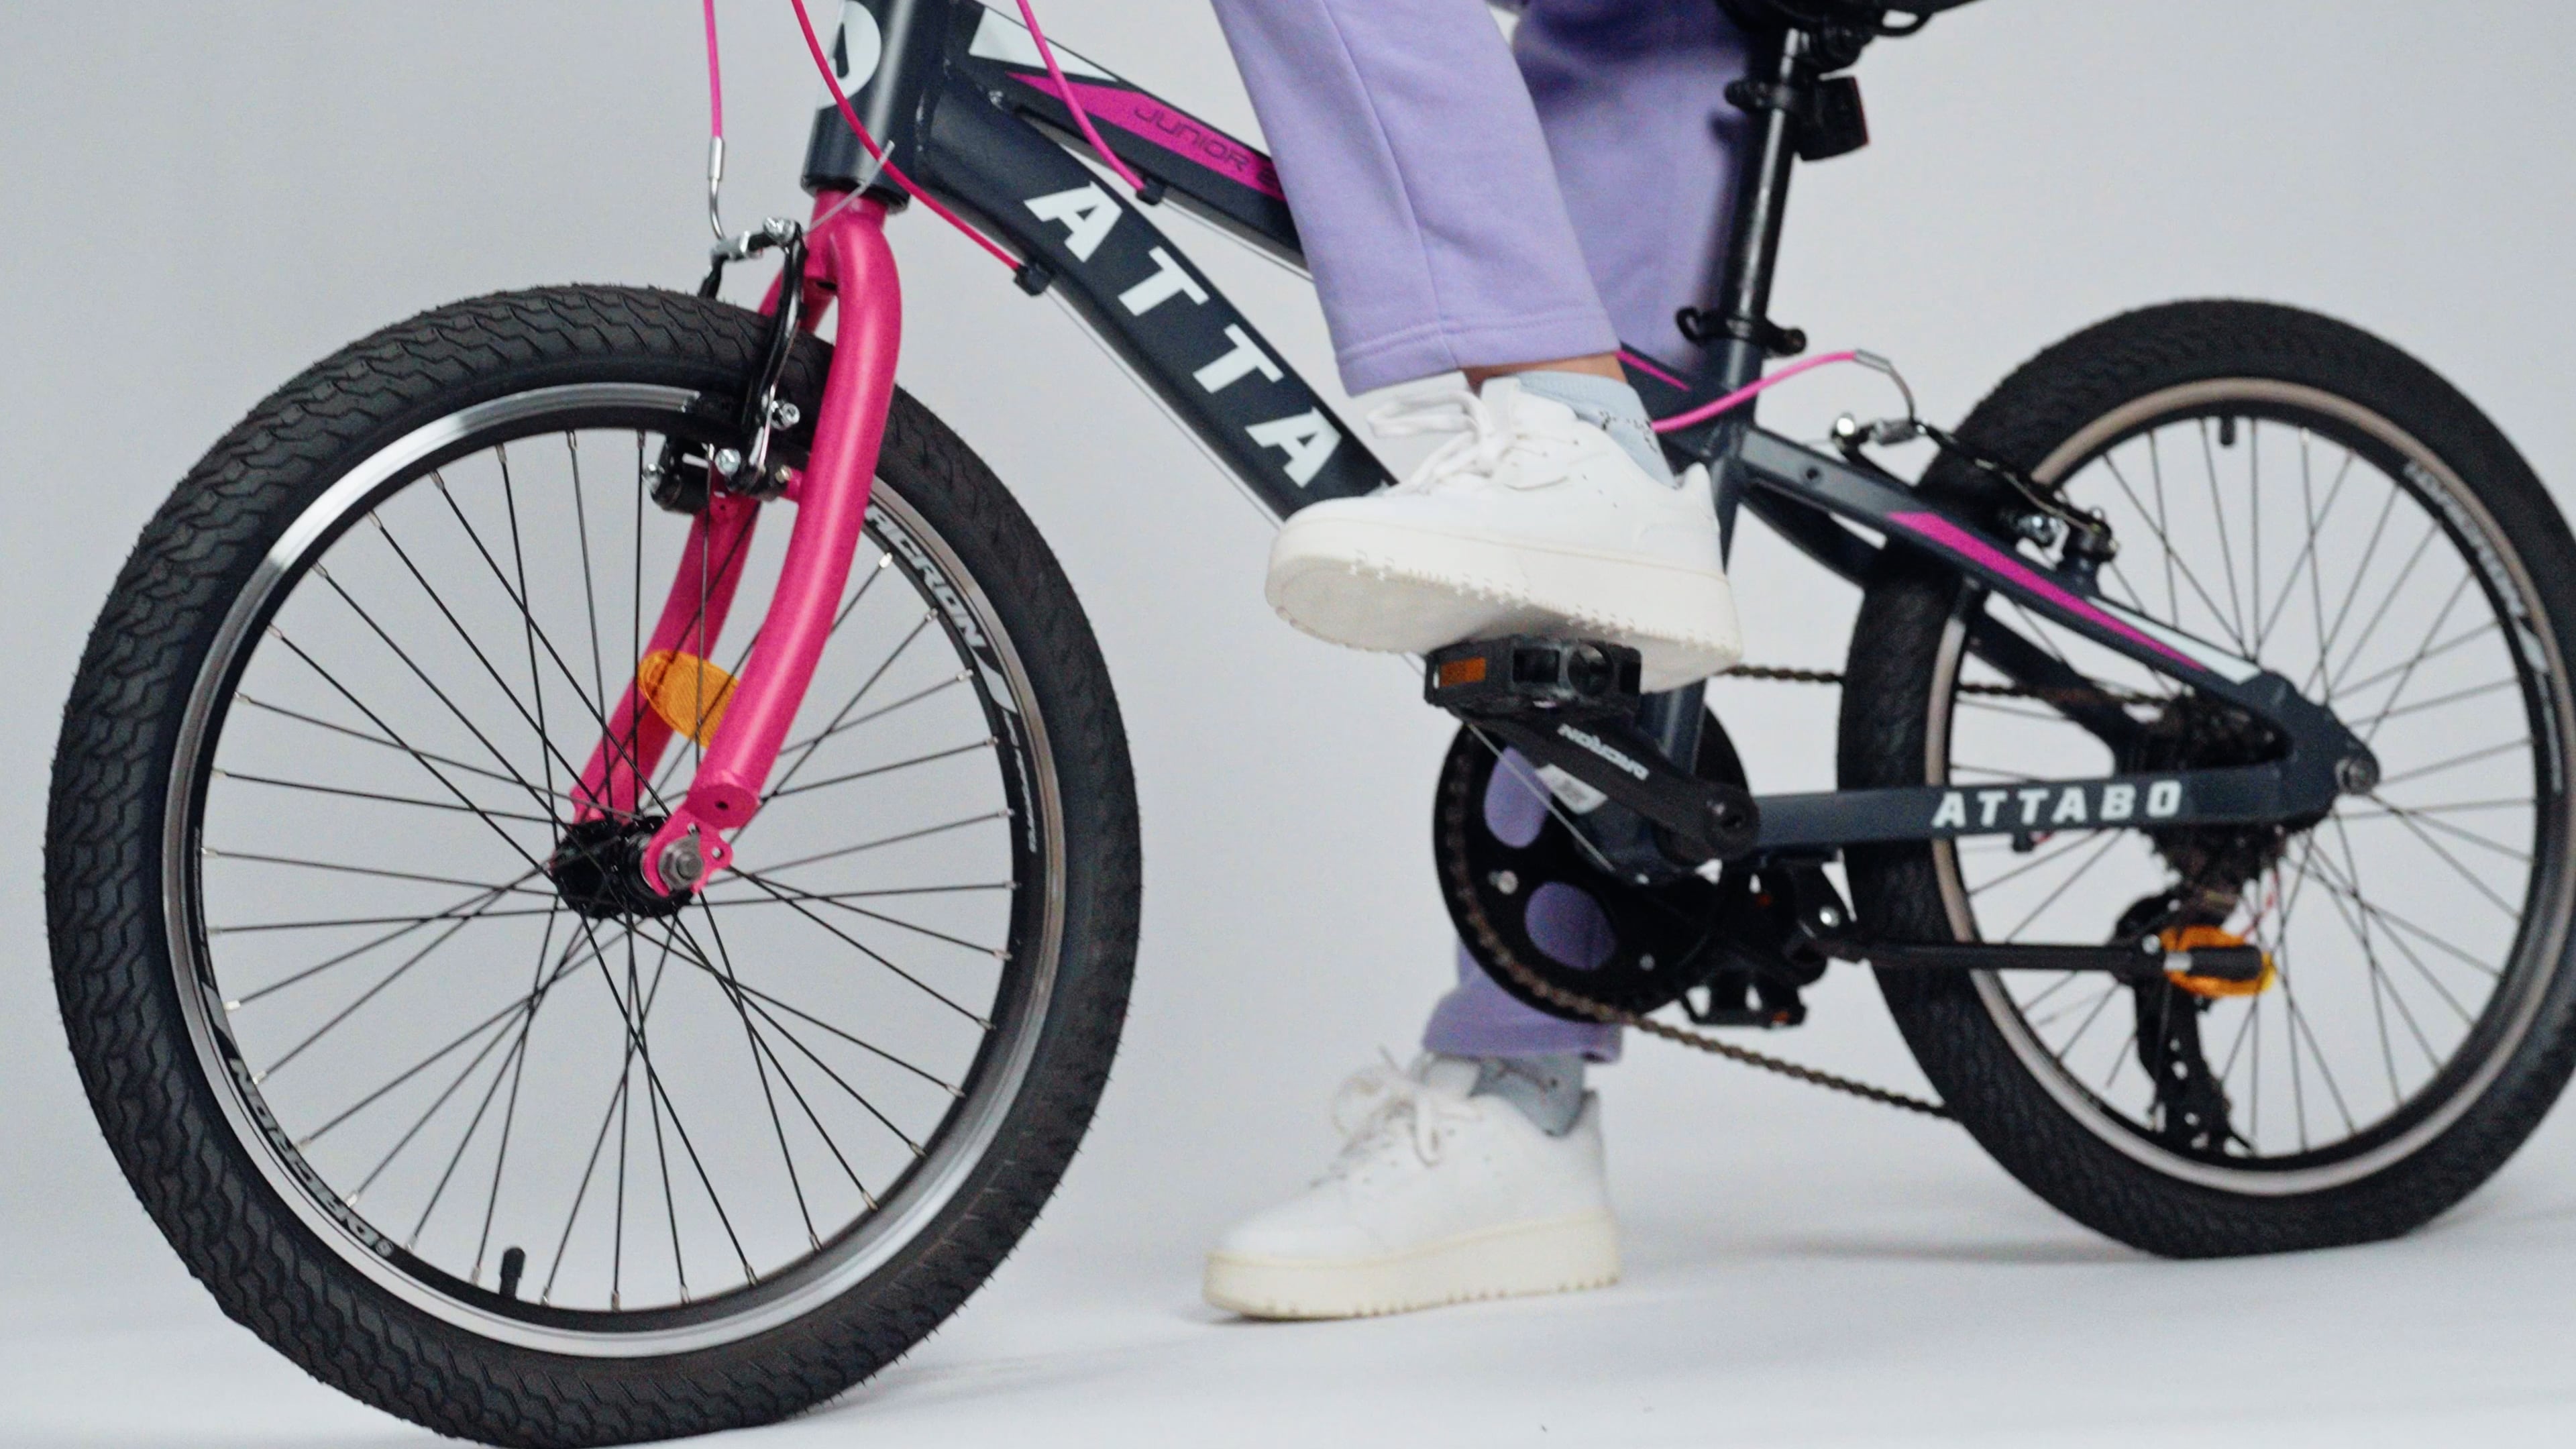 Vaikiškas dviratis ATTABO Junior 20" rožinis